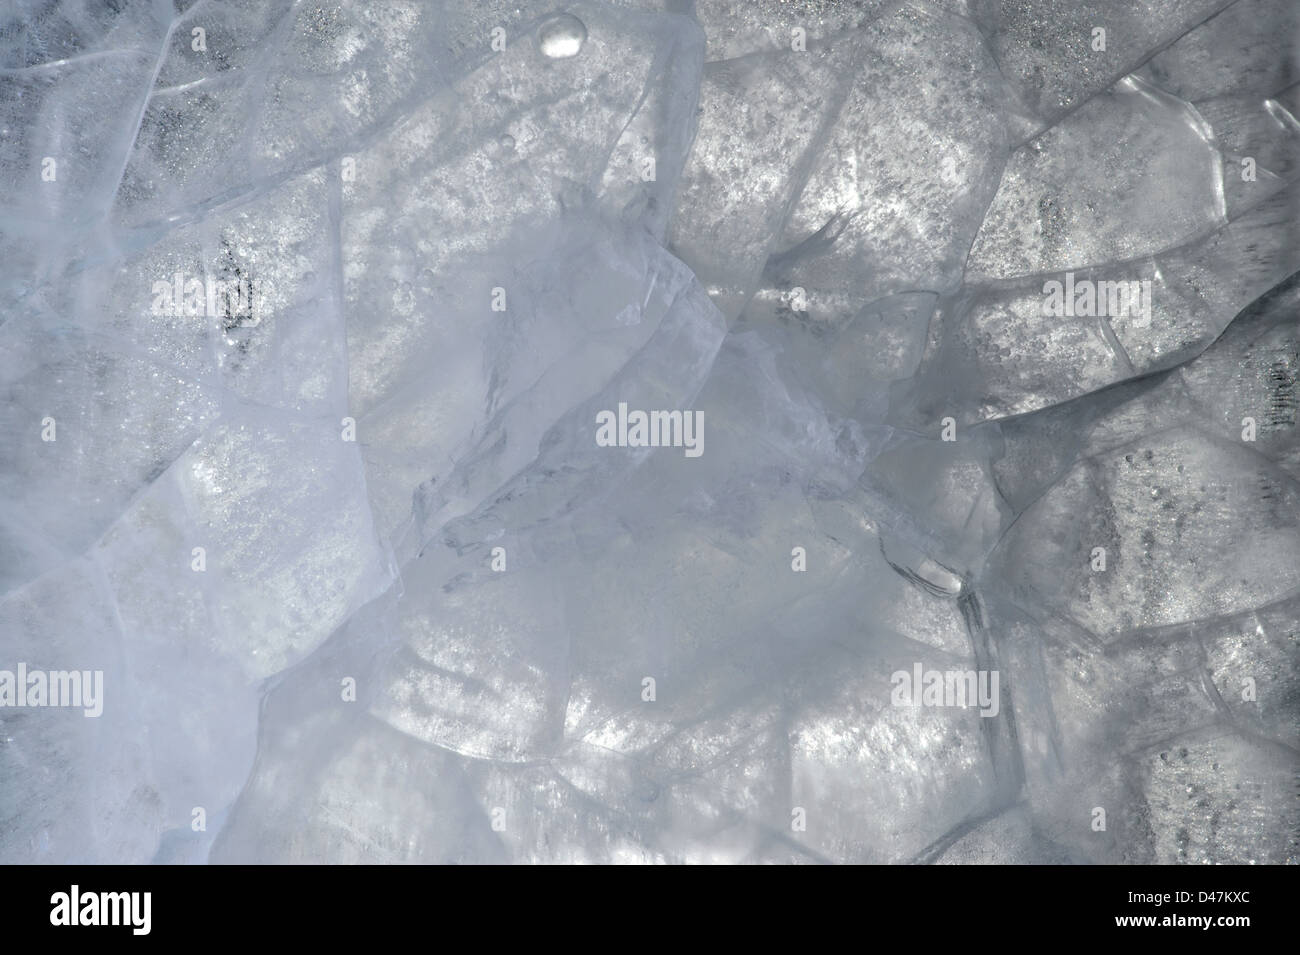 Plaque de glace - glace réel que la texture, l'arrière-plan ou de décoration Banque D'Images